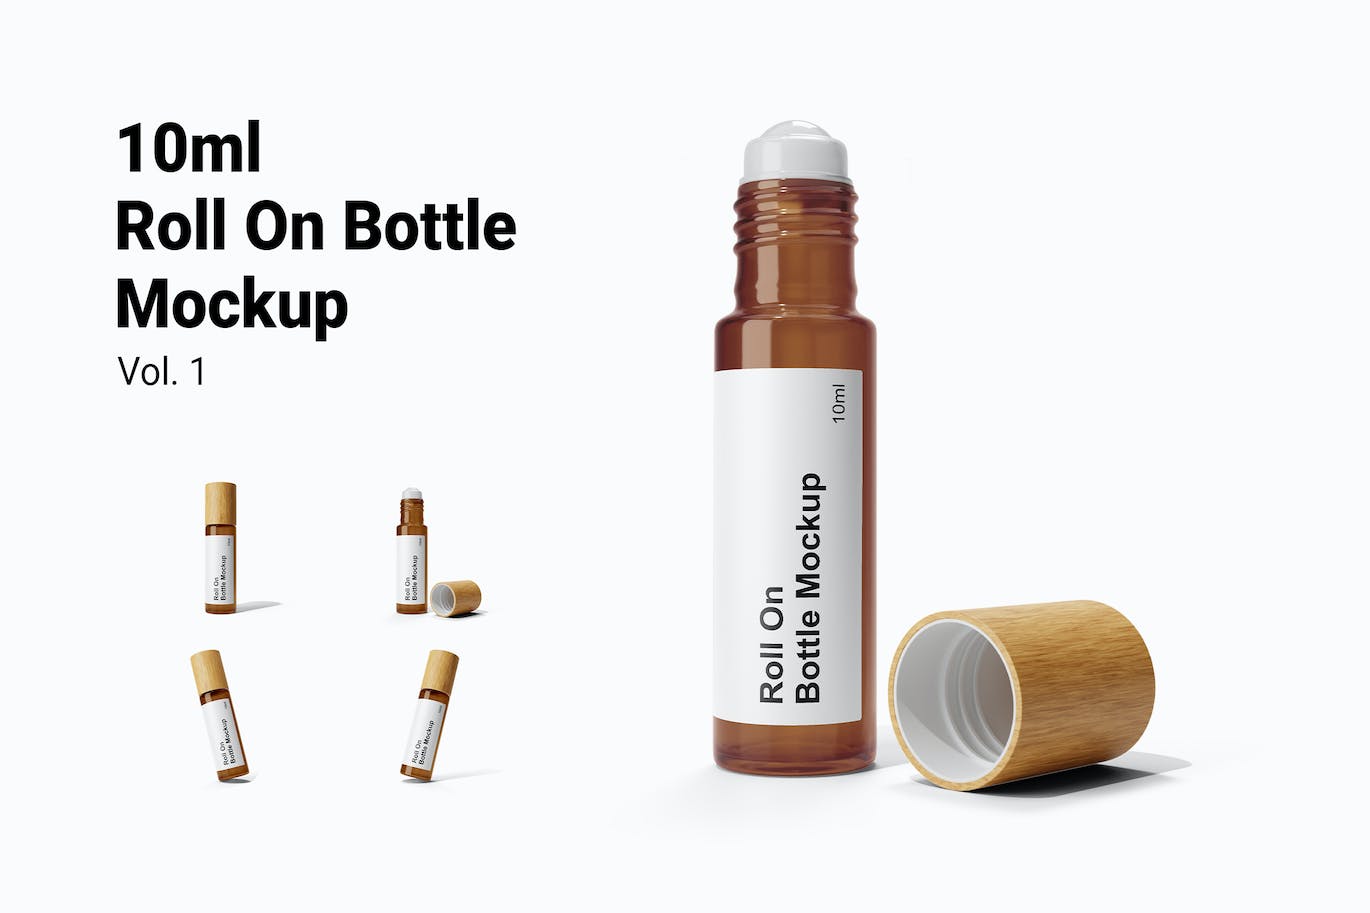 香水滚珠瓶包装设计样机图psd模板 Perfume Roll On Bottle Mockup Vol.1 样机素材 第1张